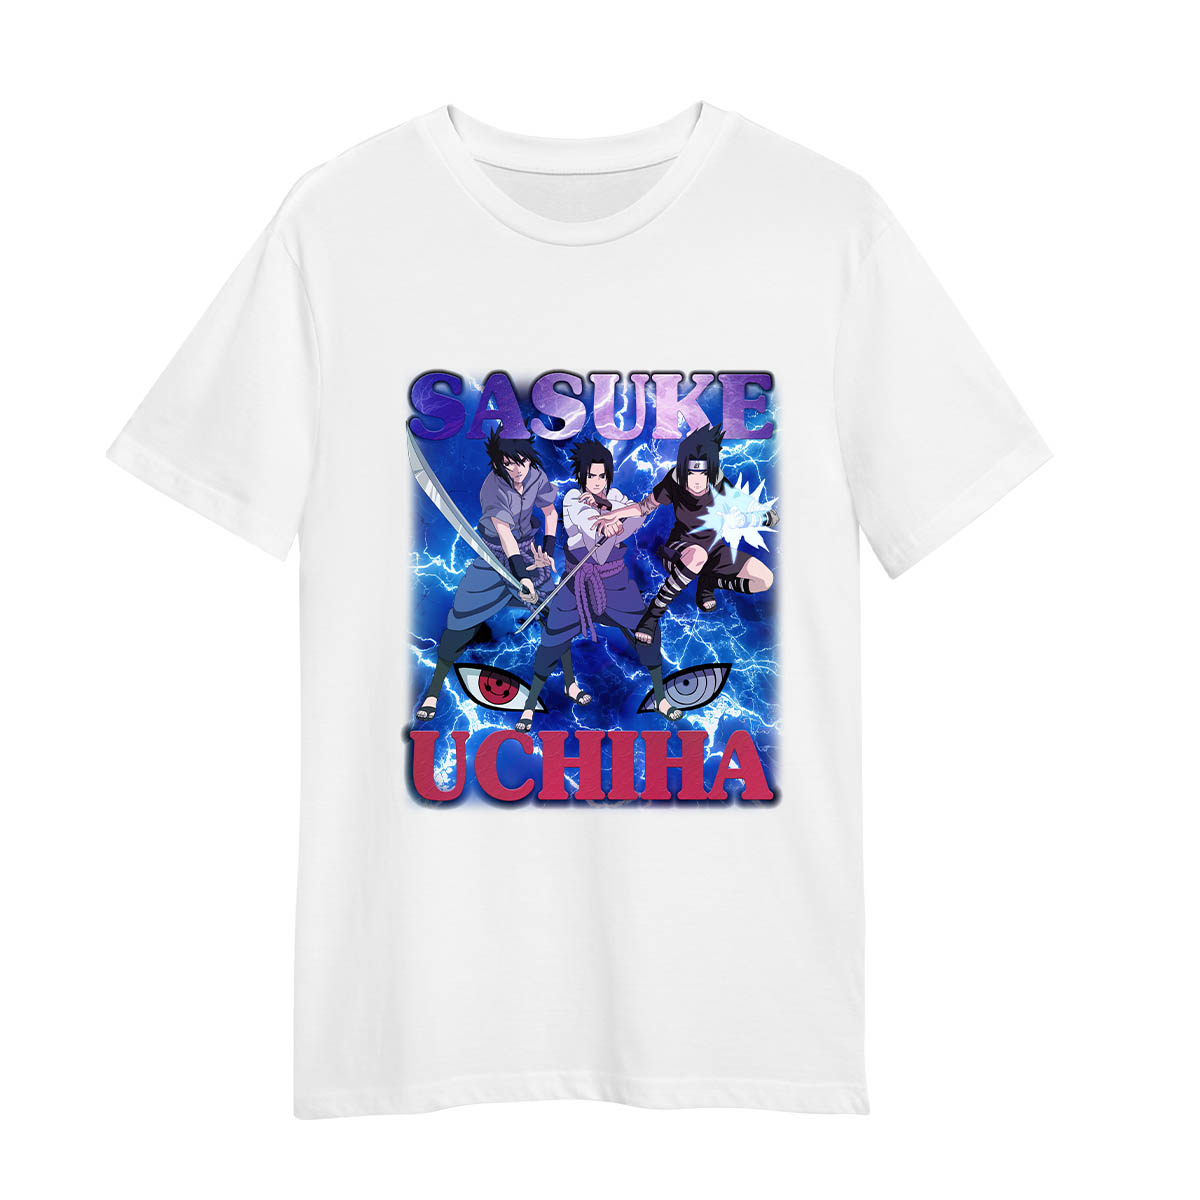 Sasuke Uchiha Naruto Anime Shippuden Adult Unisex White T-shirt